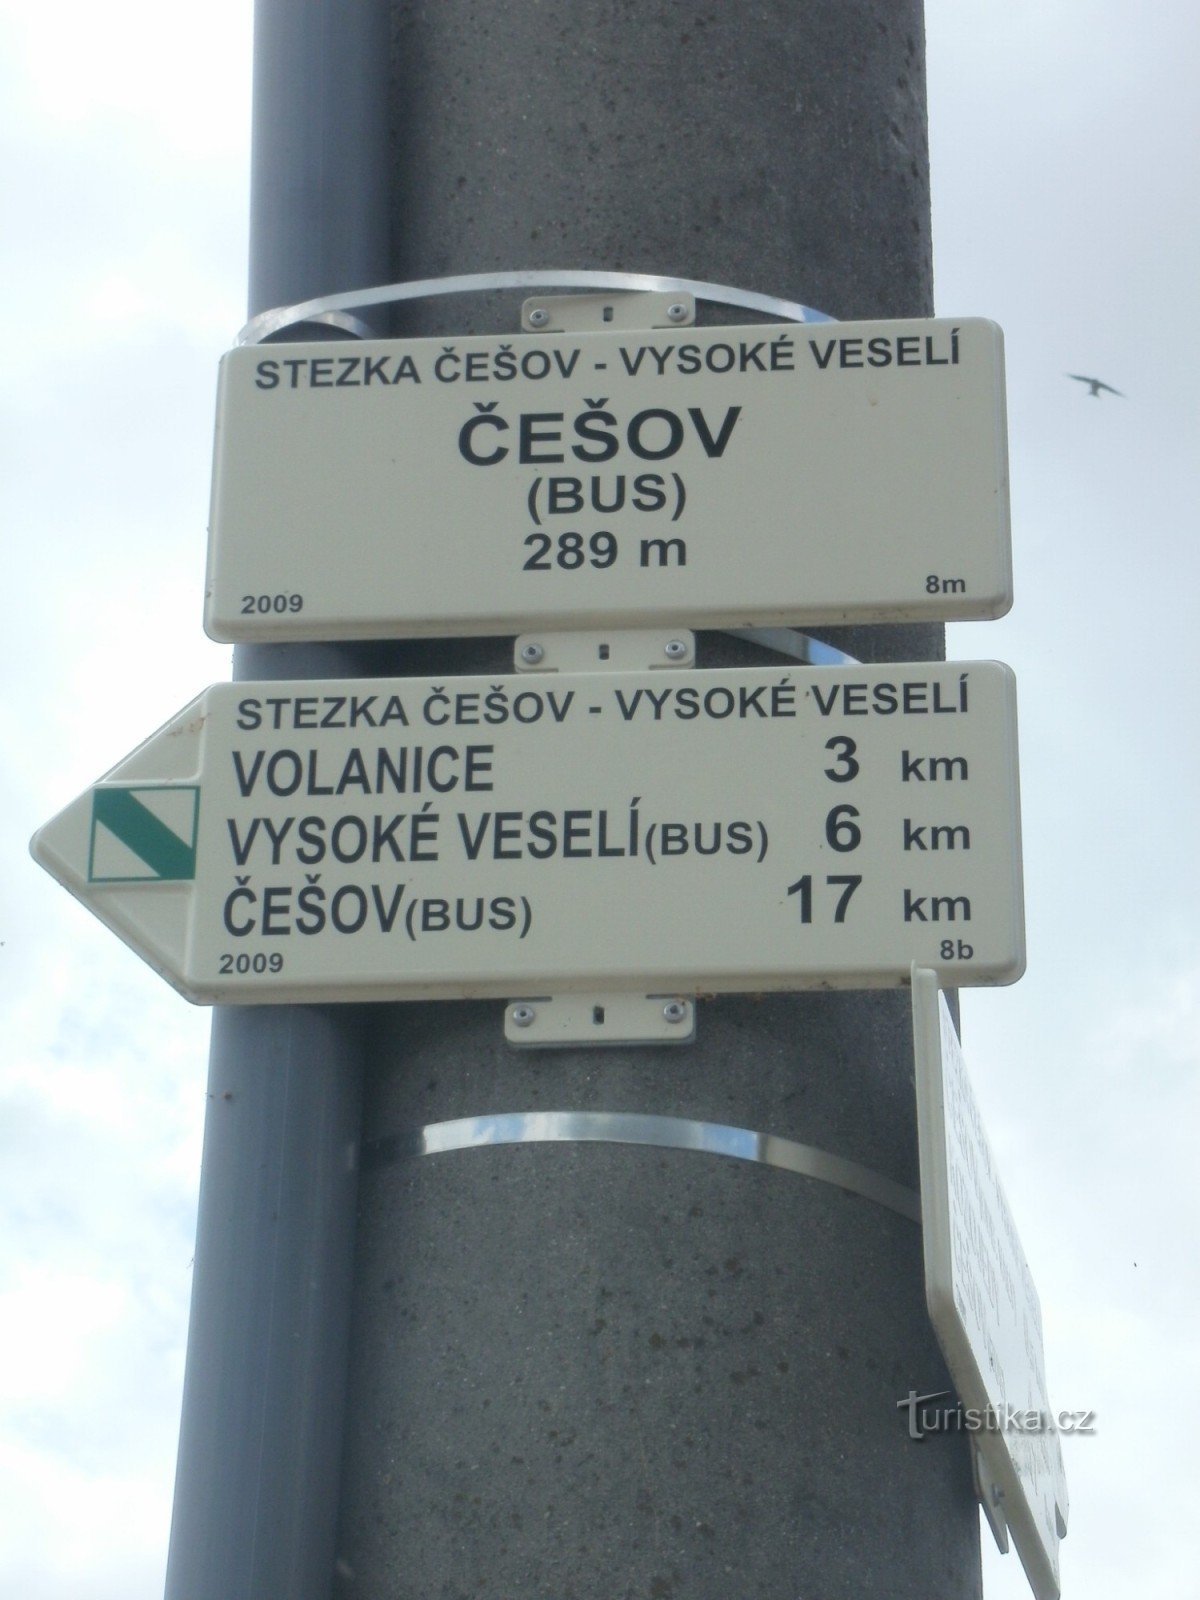 NS Češov-Vysoké Veselí - junção de ônibus Češov